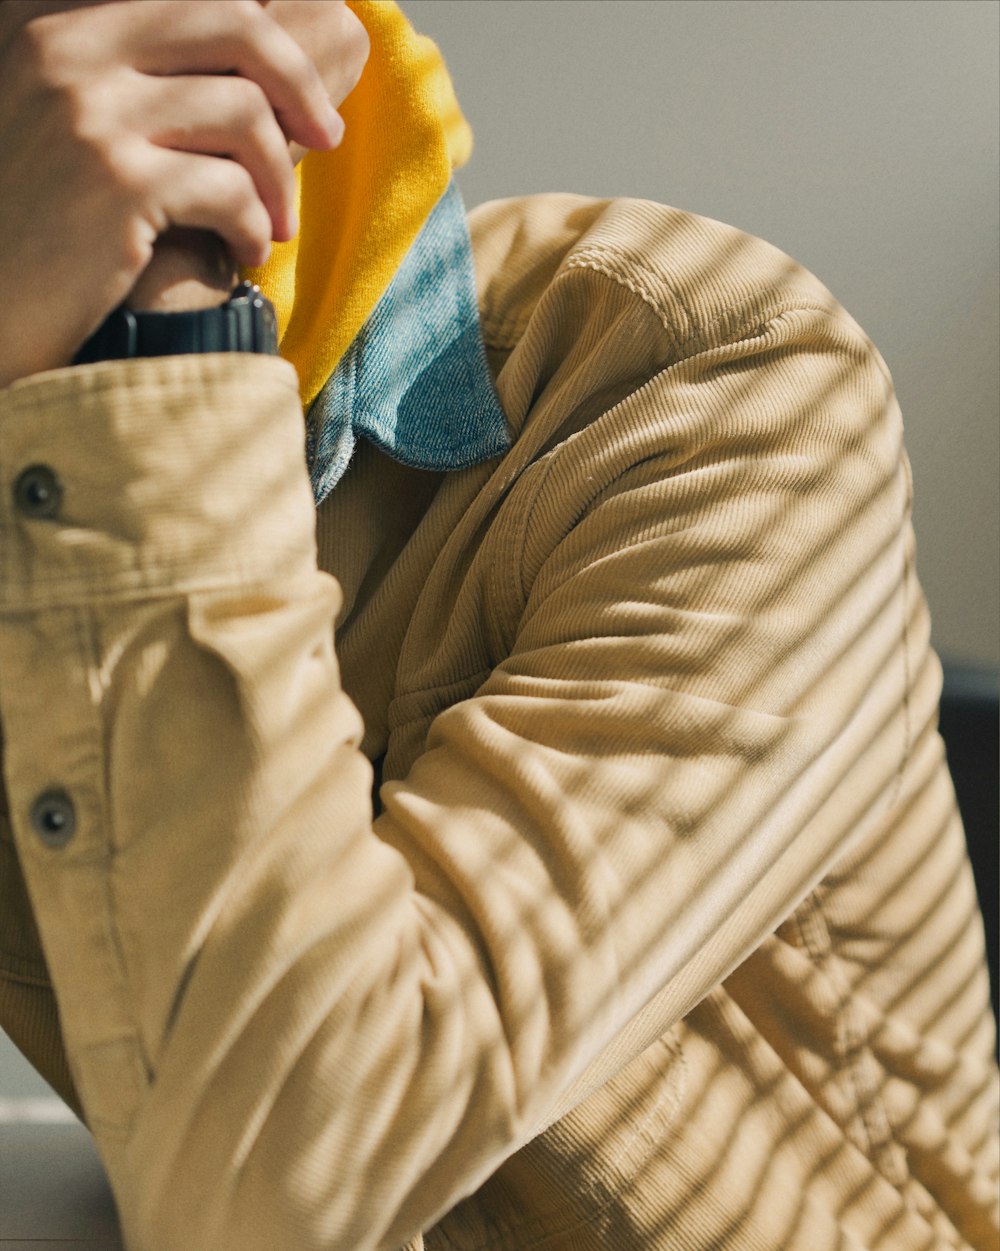 Persona con chaqueta marrón con gorro de punto azul y amarillo